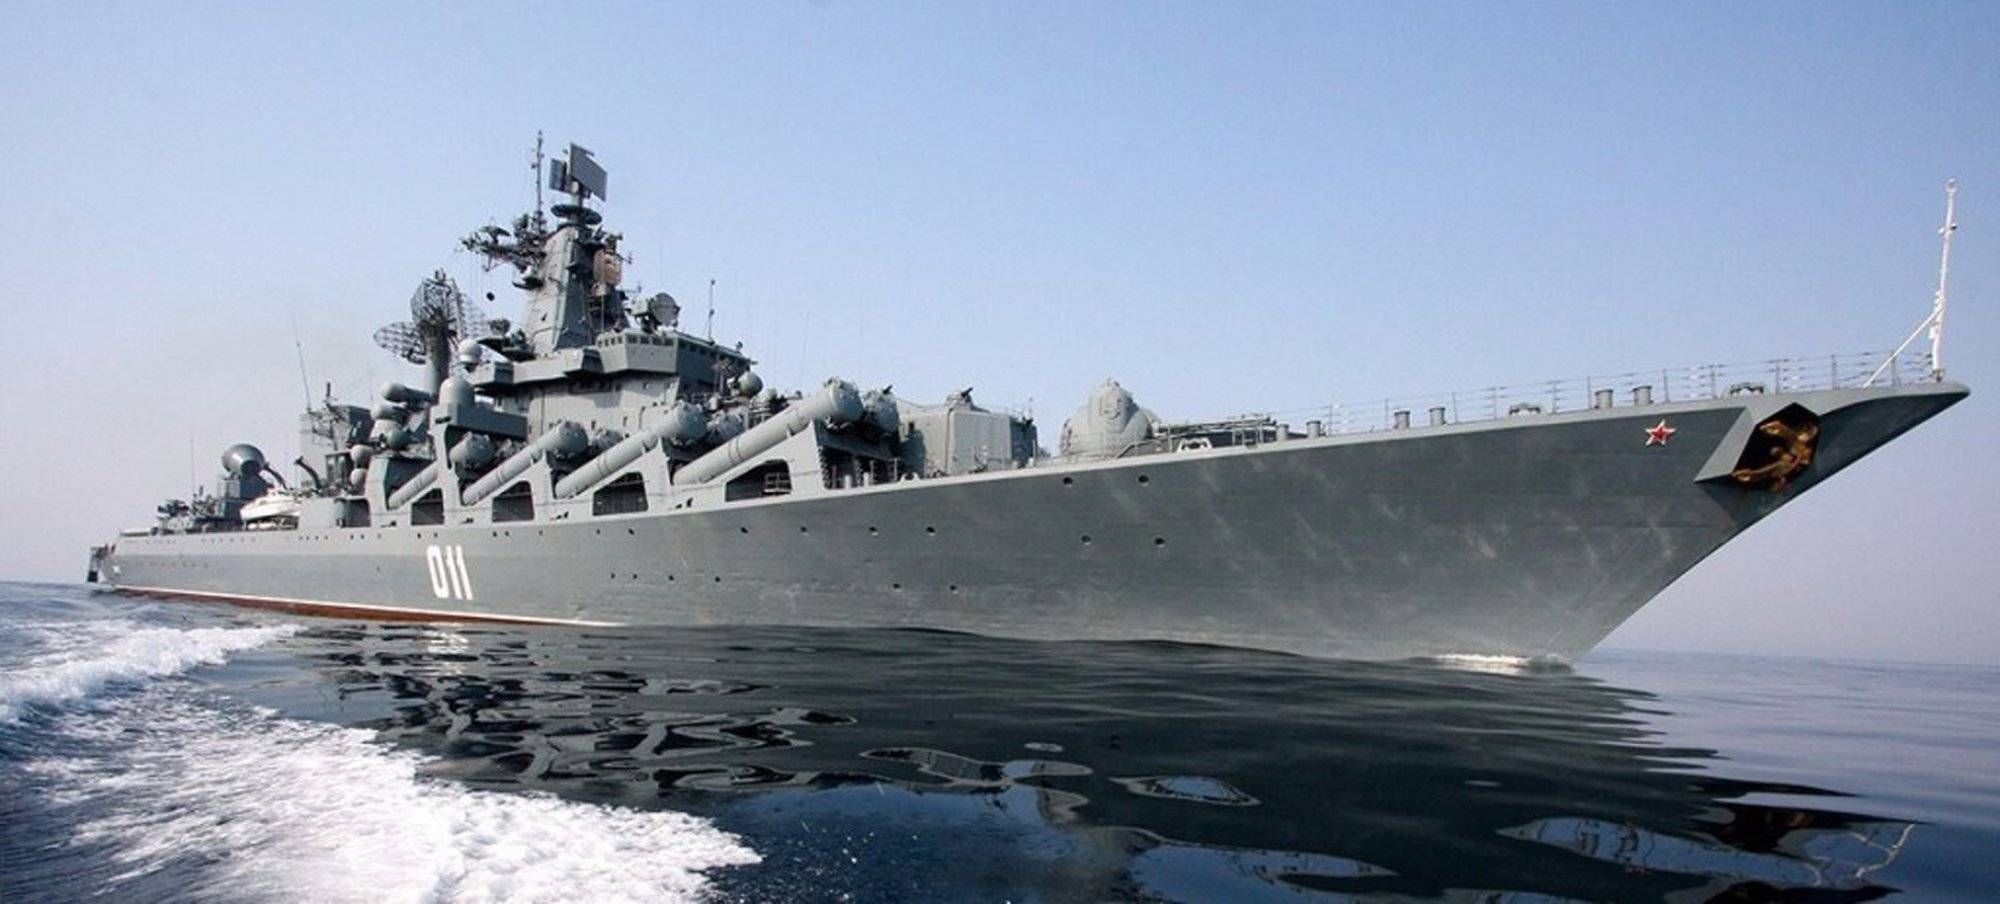 Самый большой корабль россии: “петр великий” и еще 8 морских гигантов